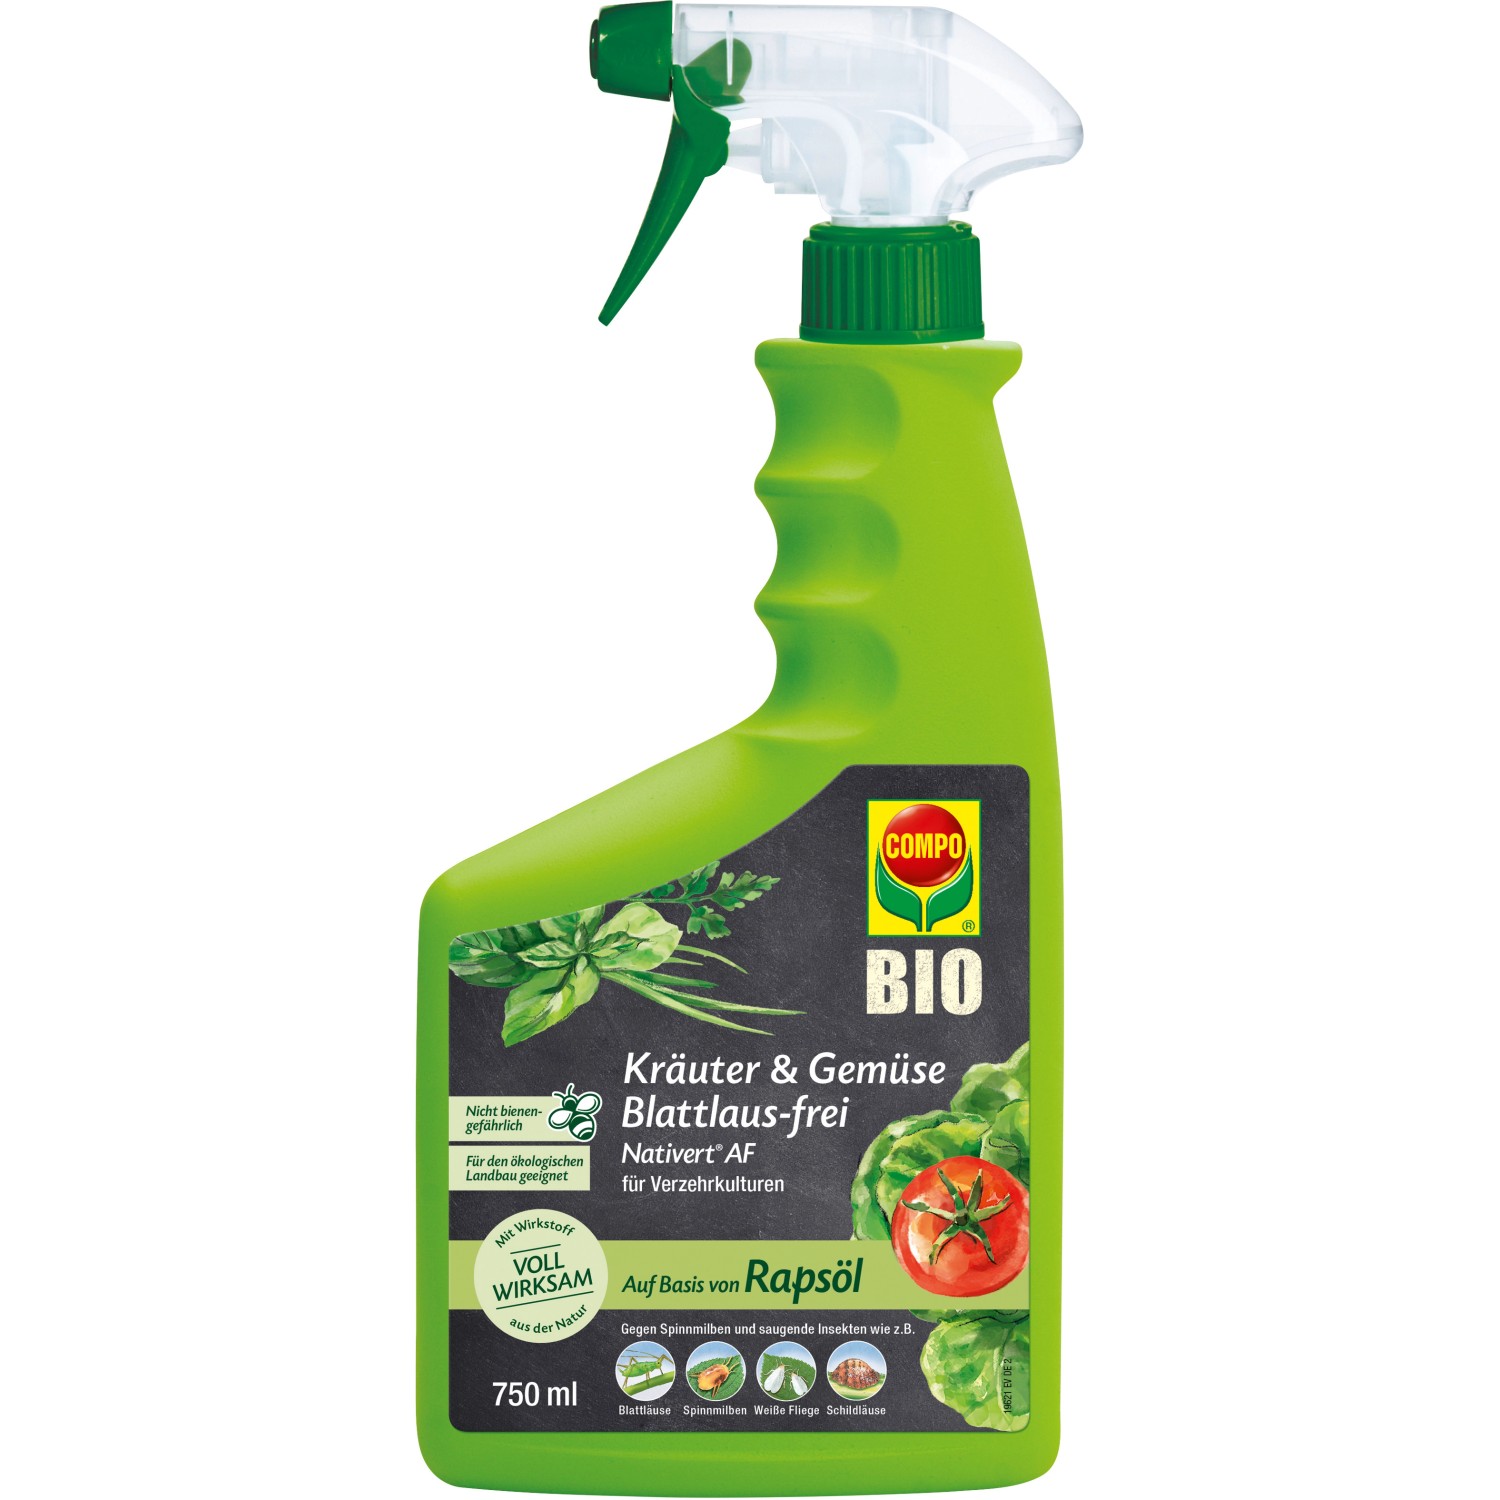 Compo Nativert® Kräuter und Gemüse Blattlaus-frei 750 ml AF Bio